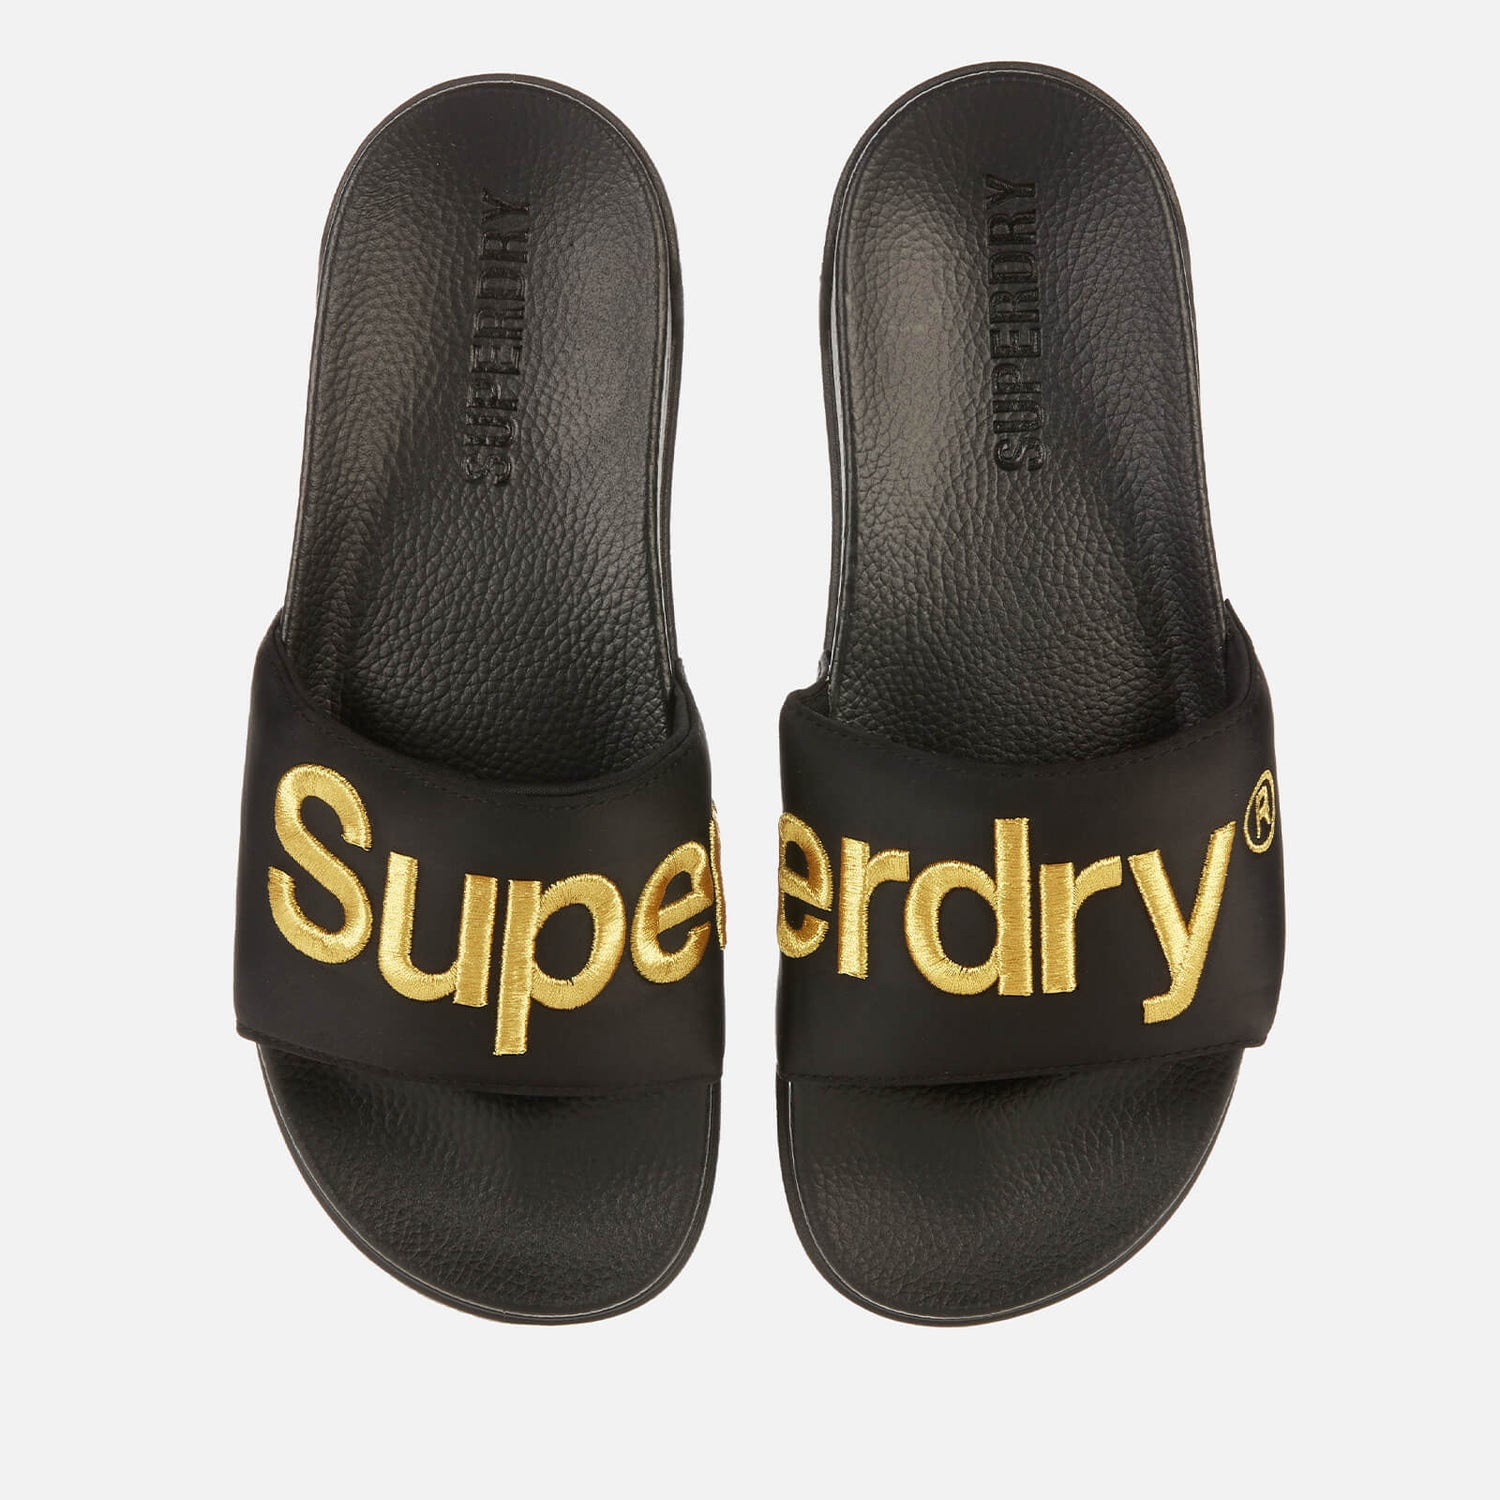 Superdry Men's Classic Scuba Slide Sandals - Black/Gold